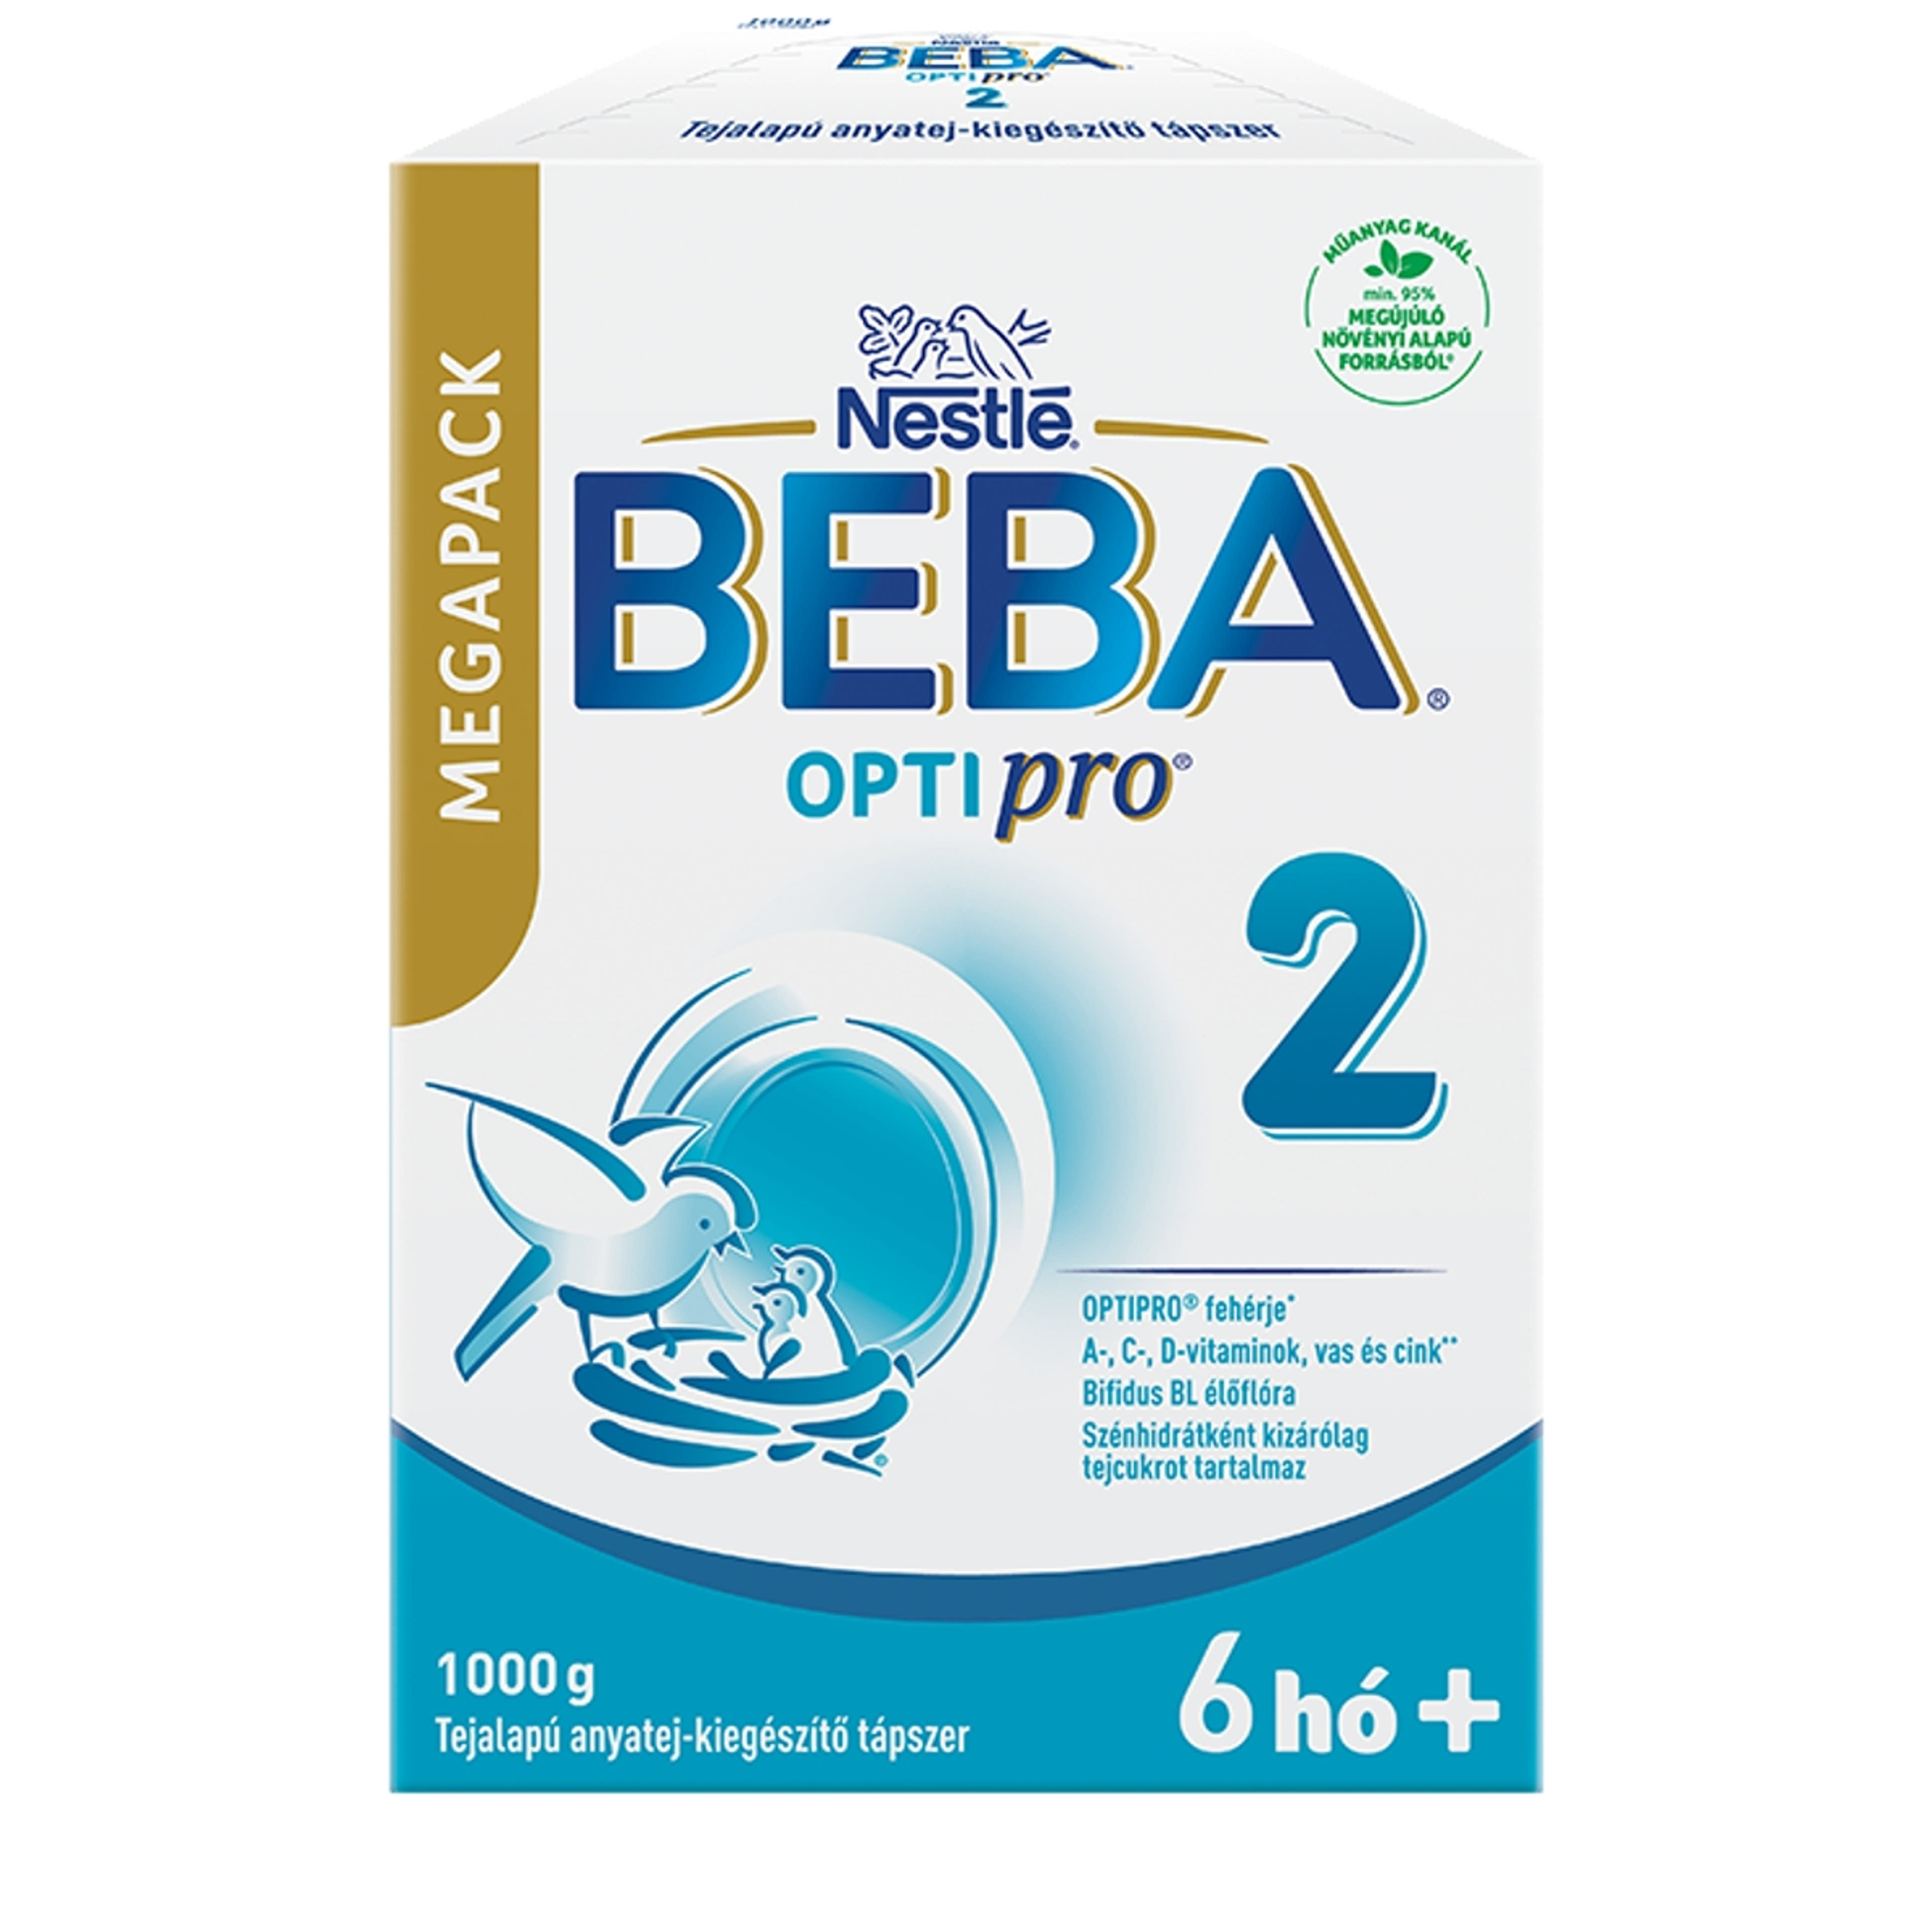 Beba Optipro 2 tejalapú anyatej-kiegészítő tápszer 6 hónapos kortól - 1000 g